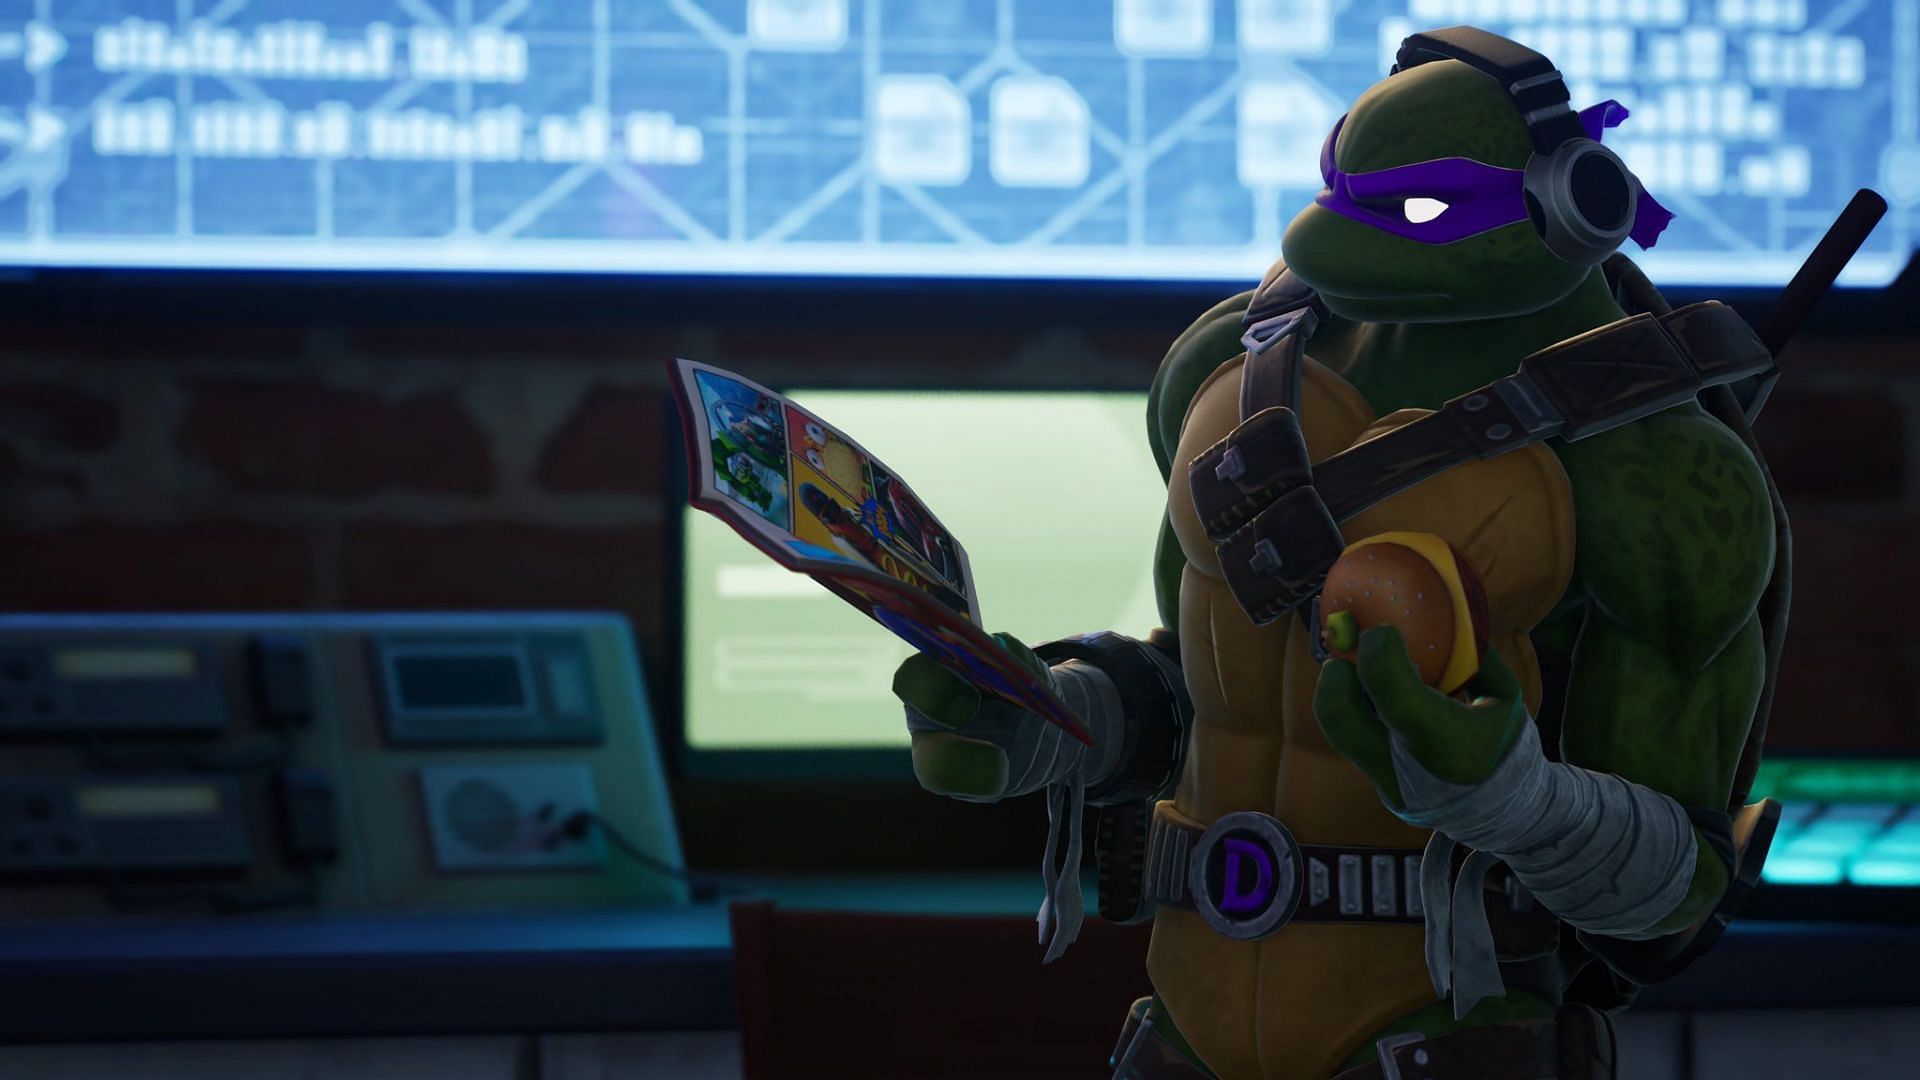 How to get Teenage Mutant Ninja Turtles Skins in Fortnite (Image via Twitter/NitroSpidey)